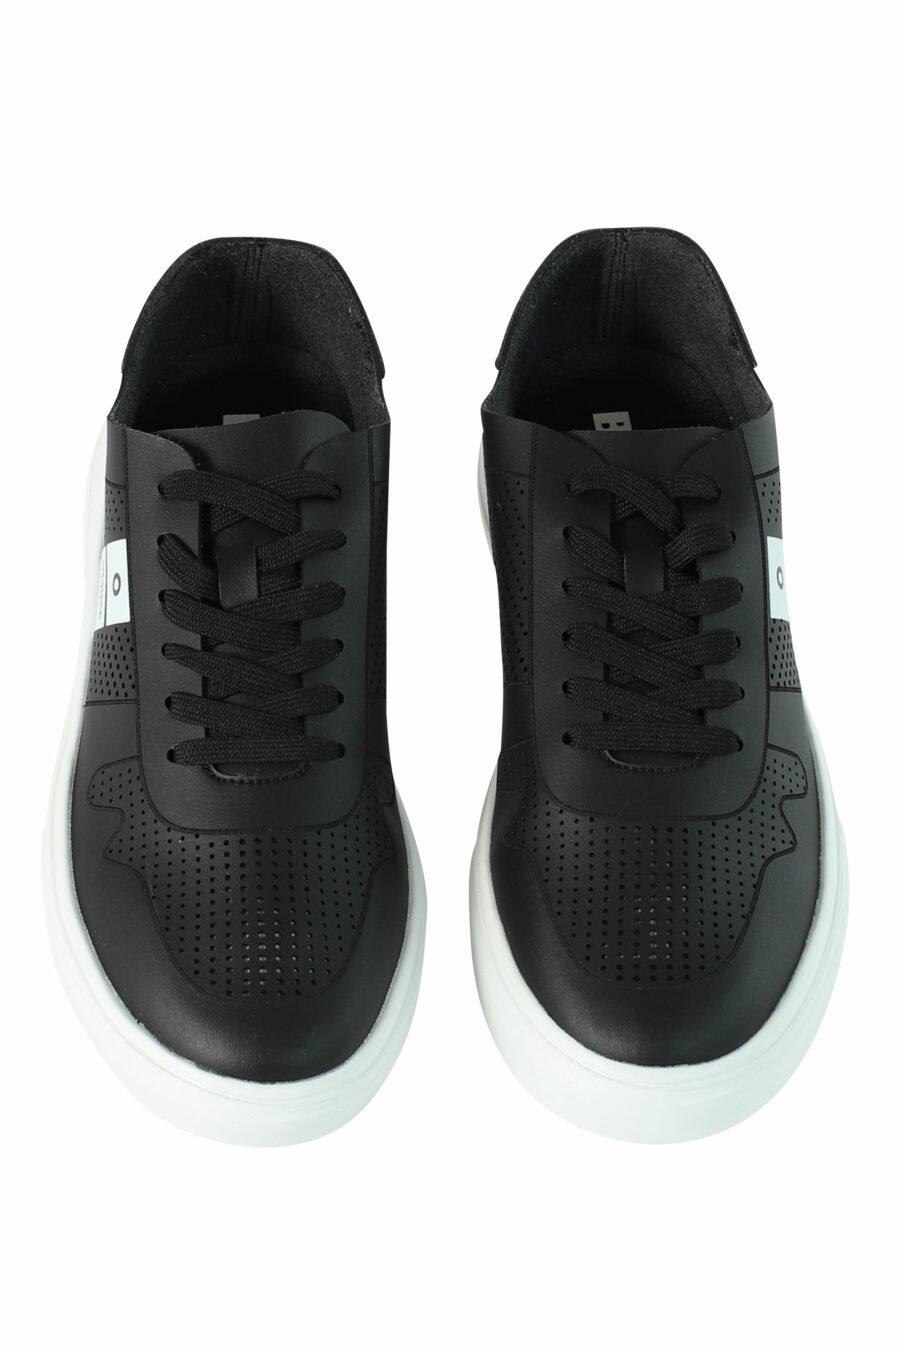 Sapatos "BLAIR" pretos respiráveis com logótipo branco - 8058156492004 5